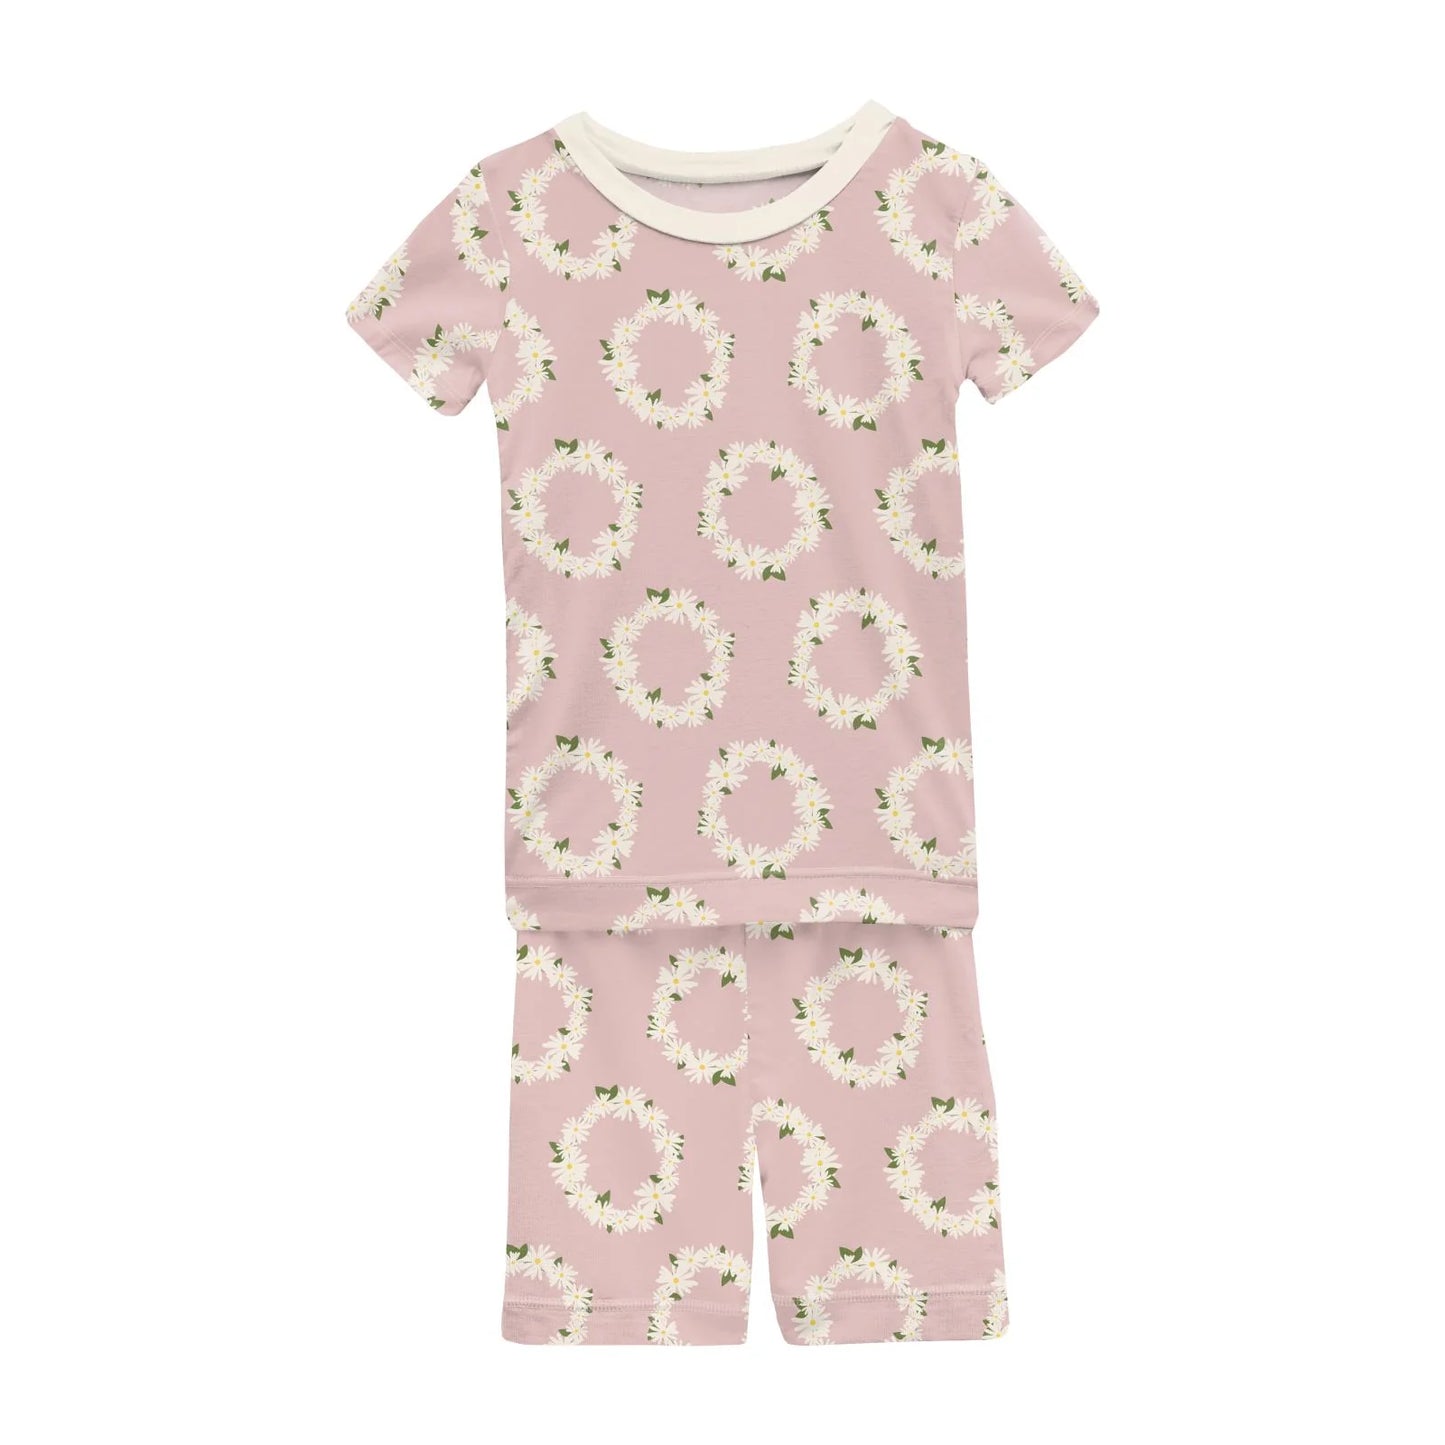 Kickee Pants Print Short Sleeve Pajama Set with Shorts: Baby Rose Daisy Crowns